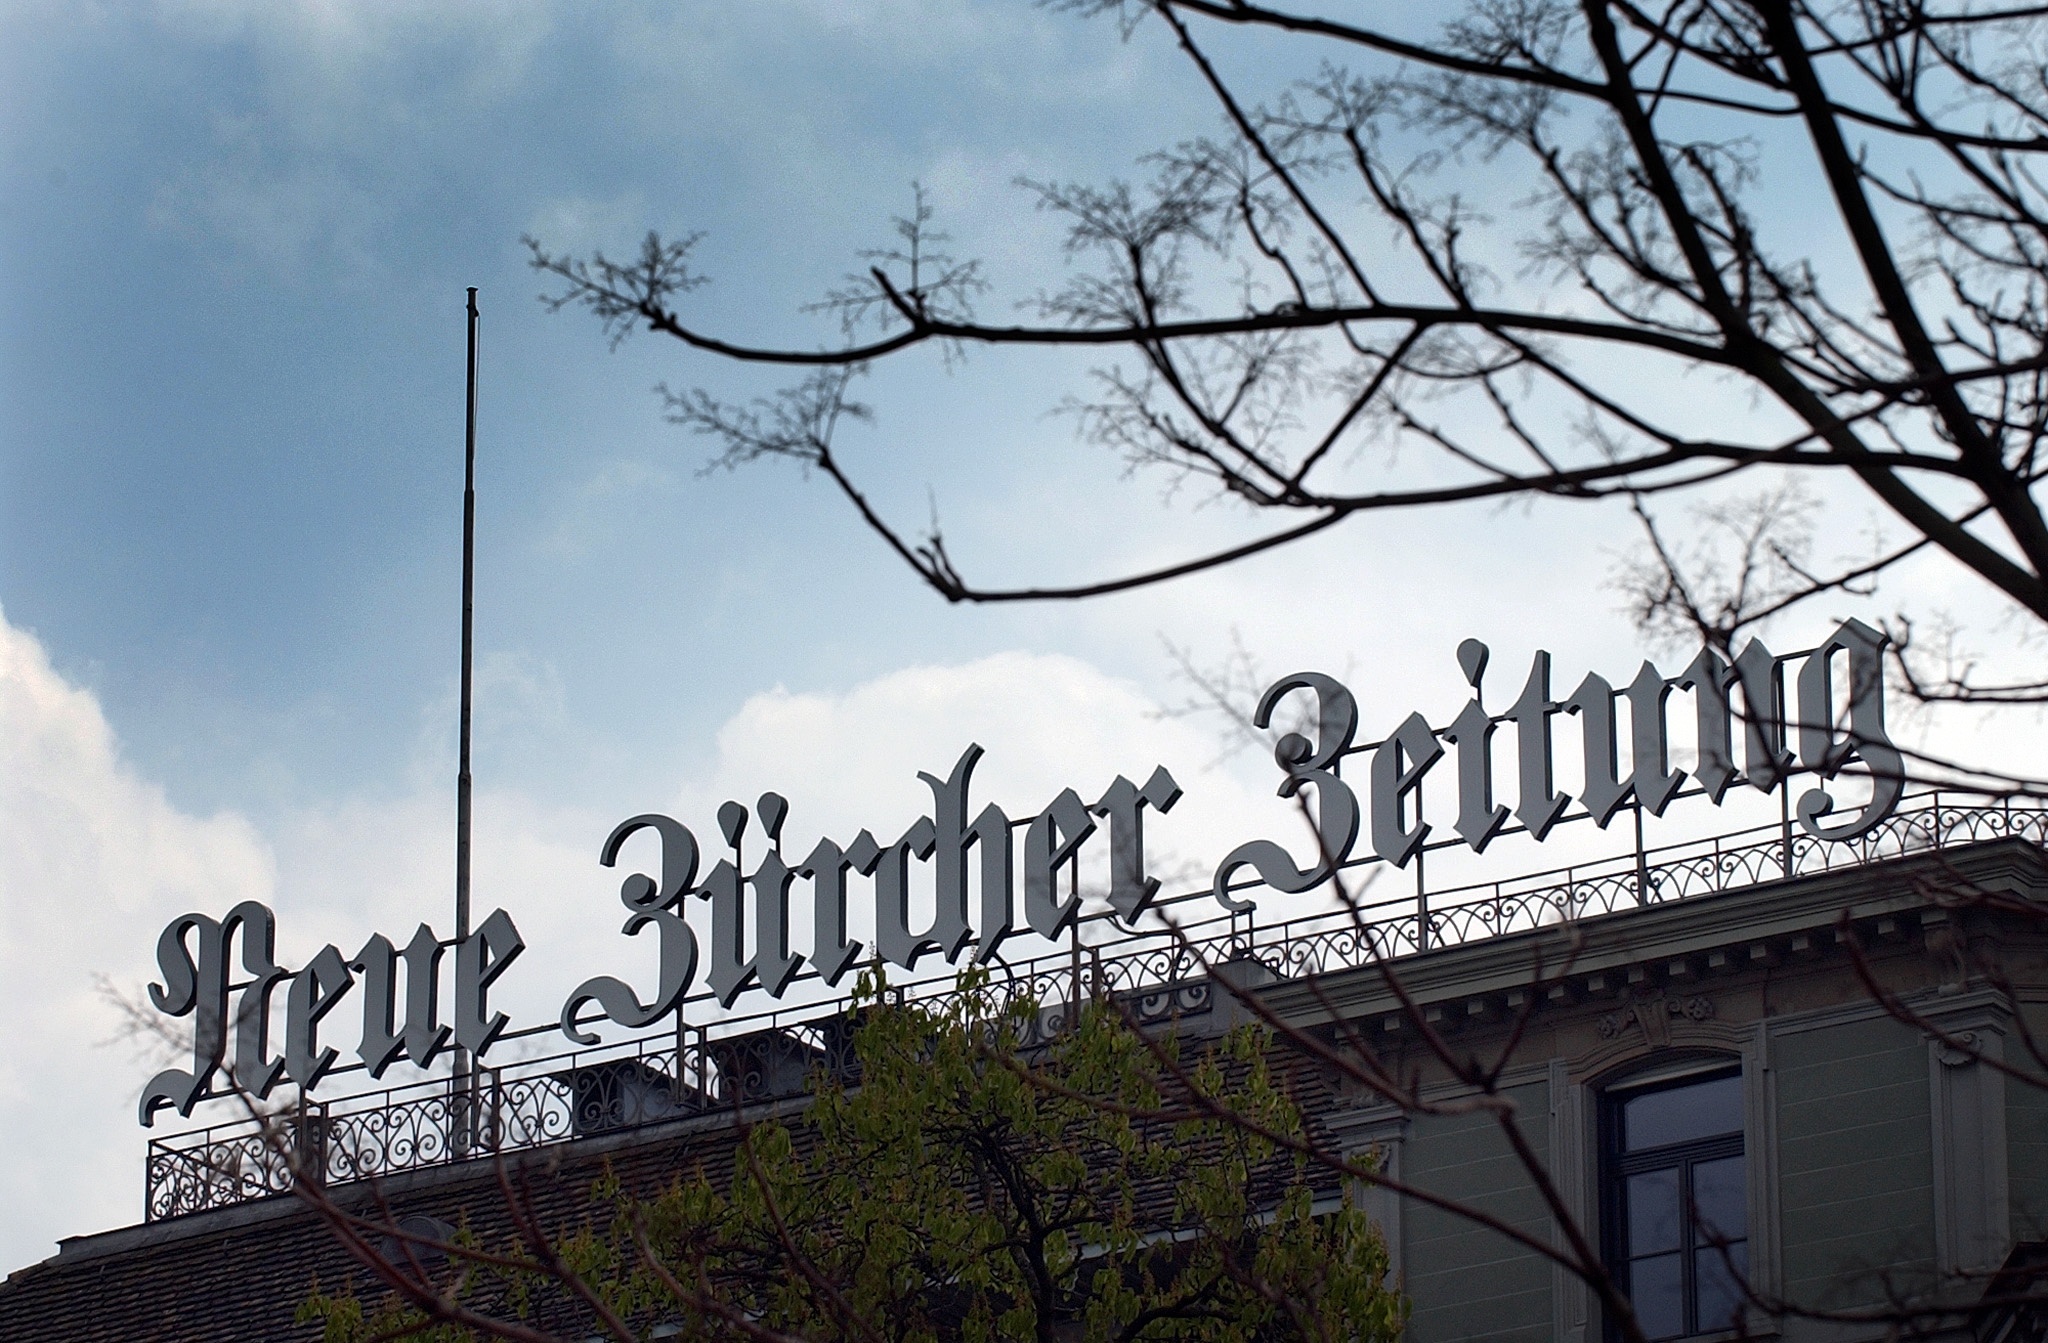 NZZ-Verlag in Zürich: Die Schweizer Tageszeitung will in Deutschland eine Marktlücke schließen, die der Linksschwenk der Medien vermeintlich hinterlassen habe